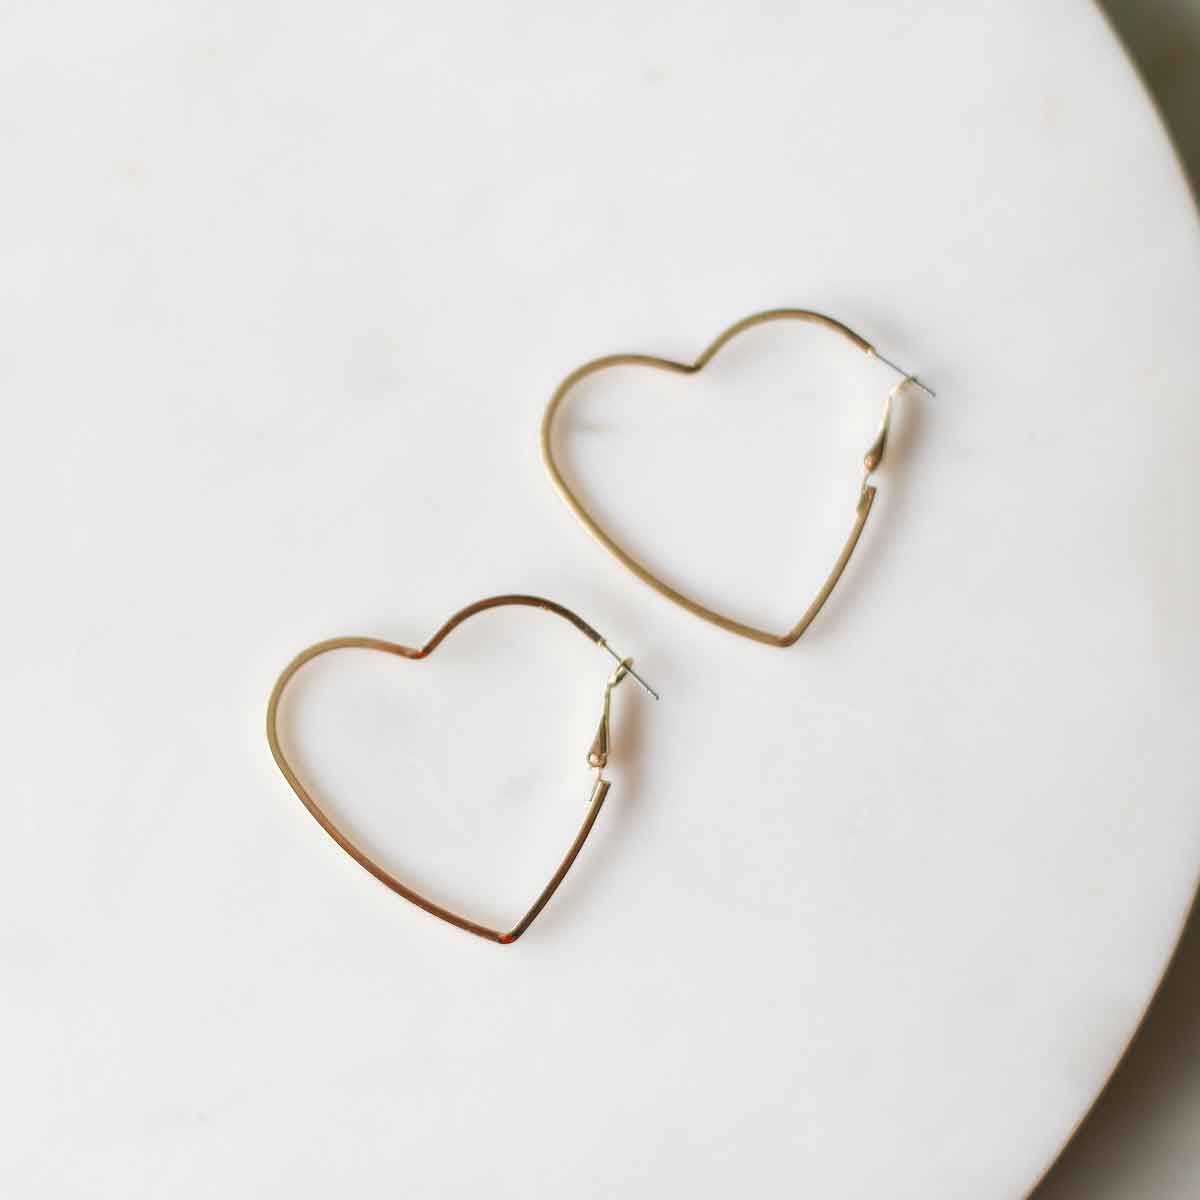 Heart Hoop Earrings   Gold   2"